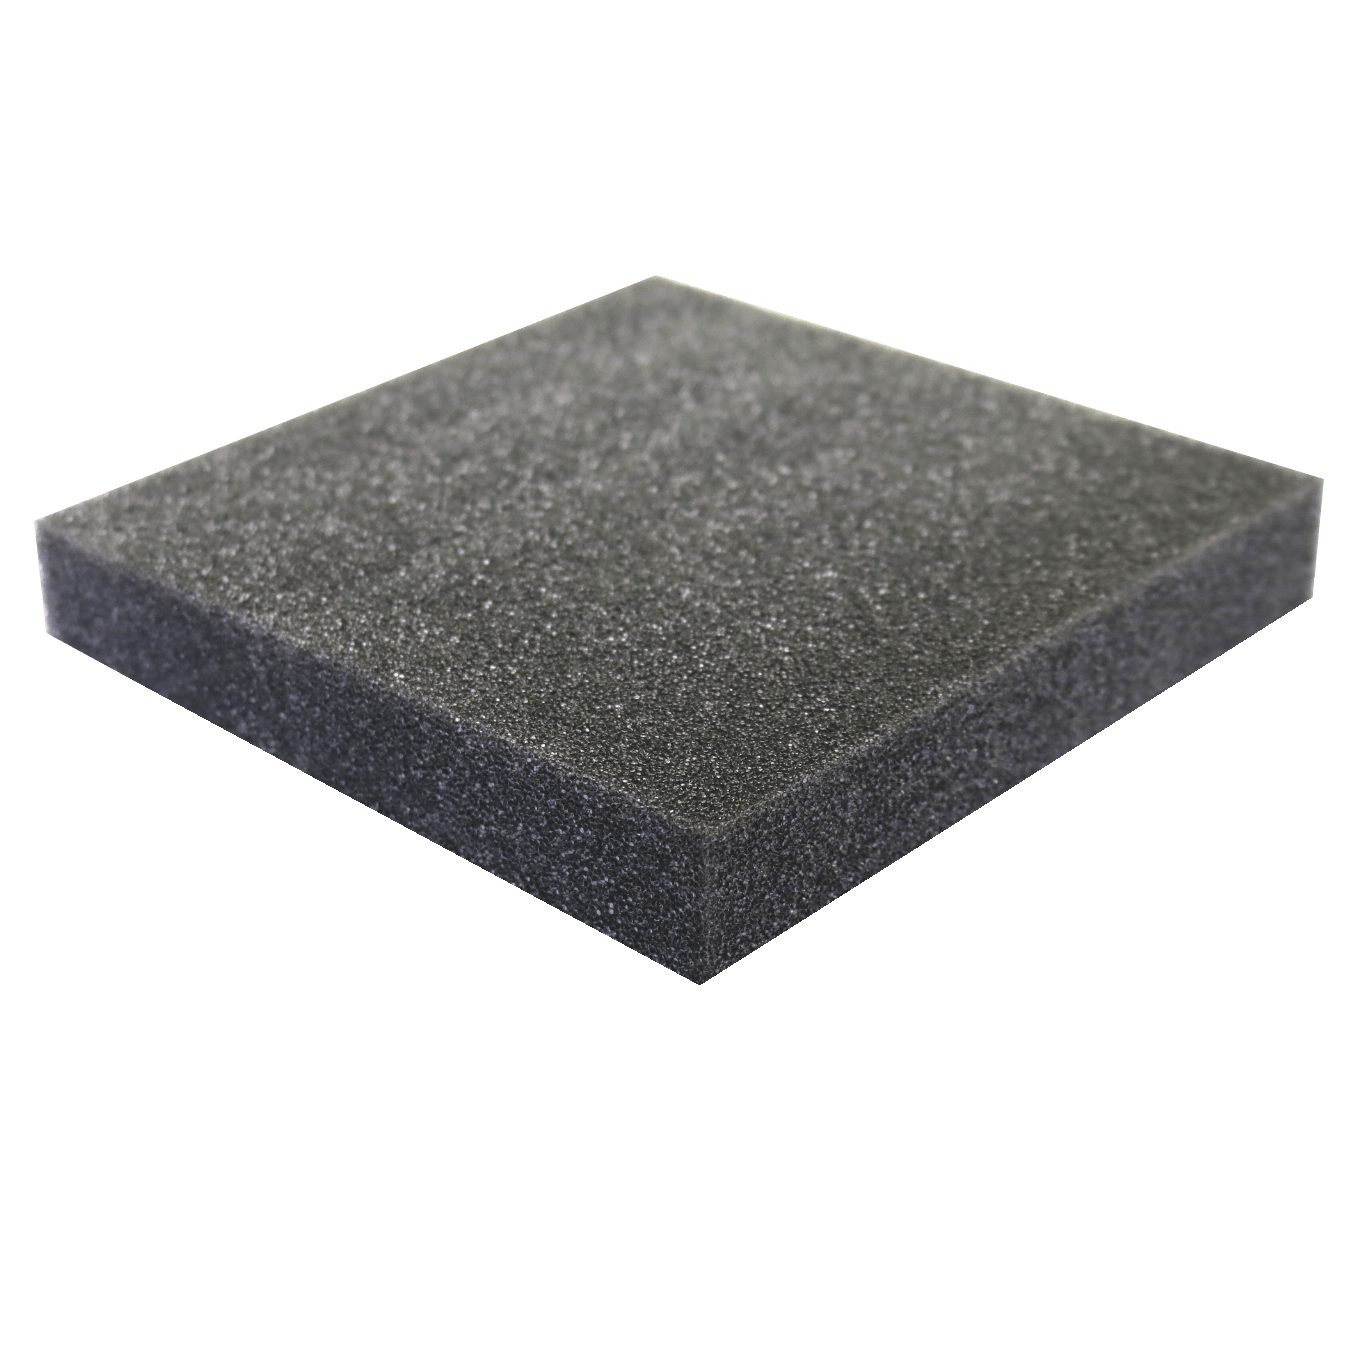 PE Foam Planks - Density: 1.7 lbs